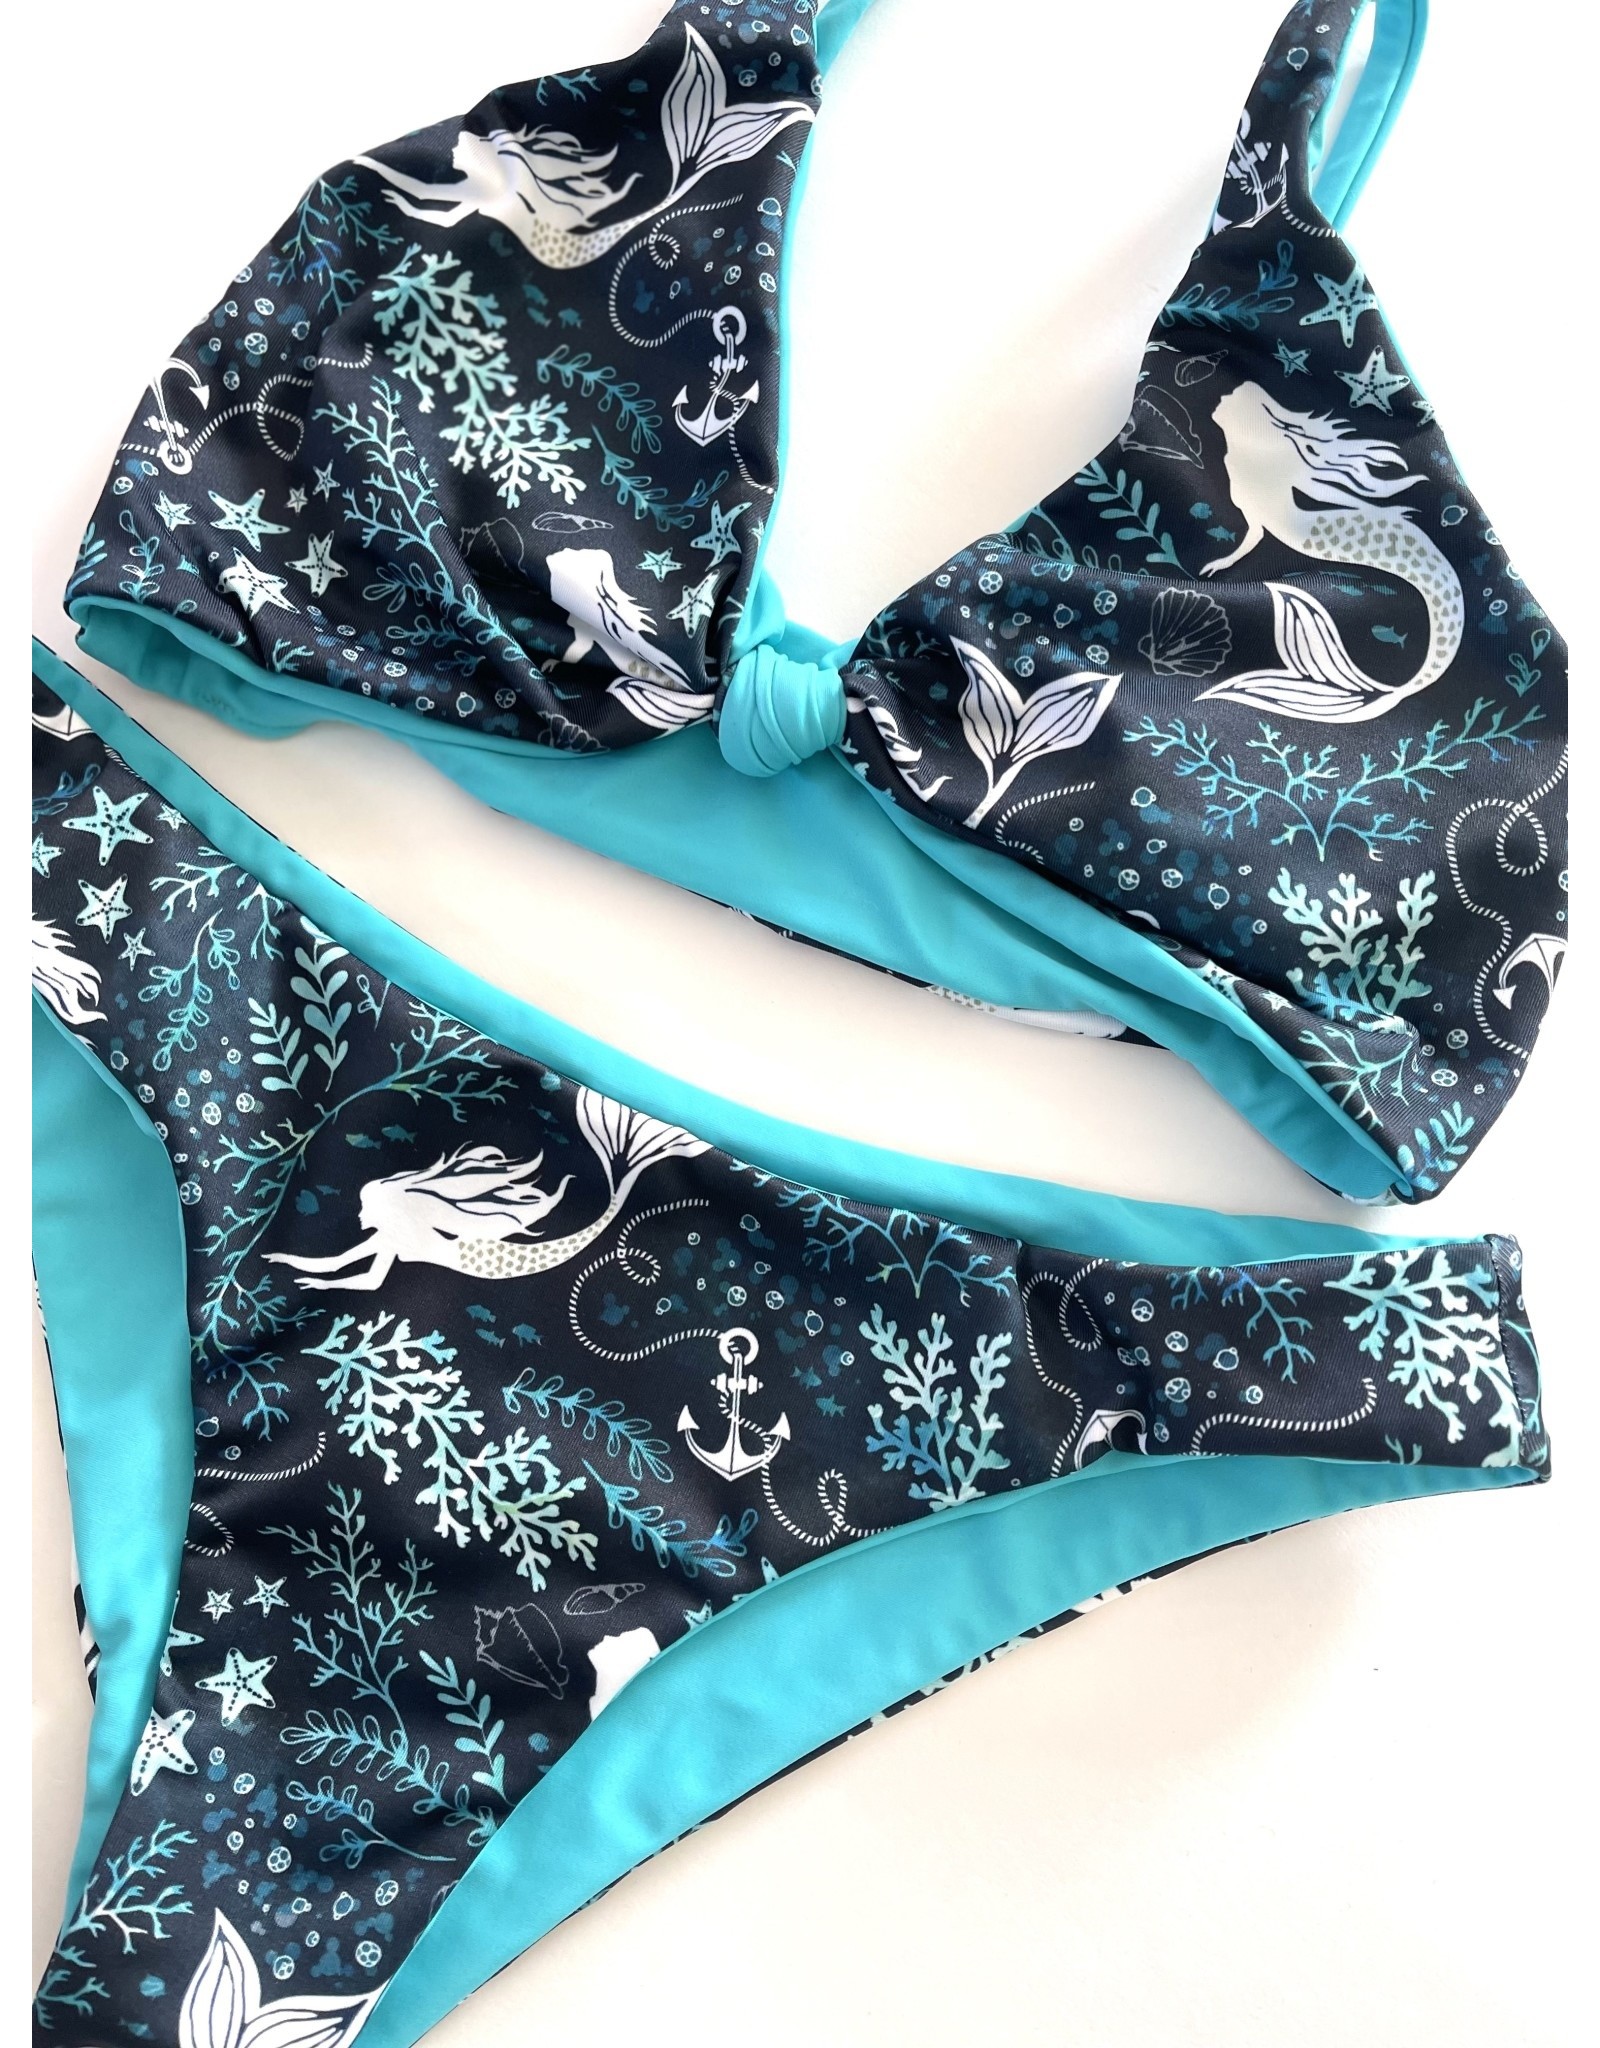 Summer Rae Designs Mermaid Amelia Top